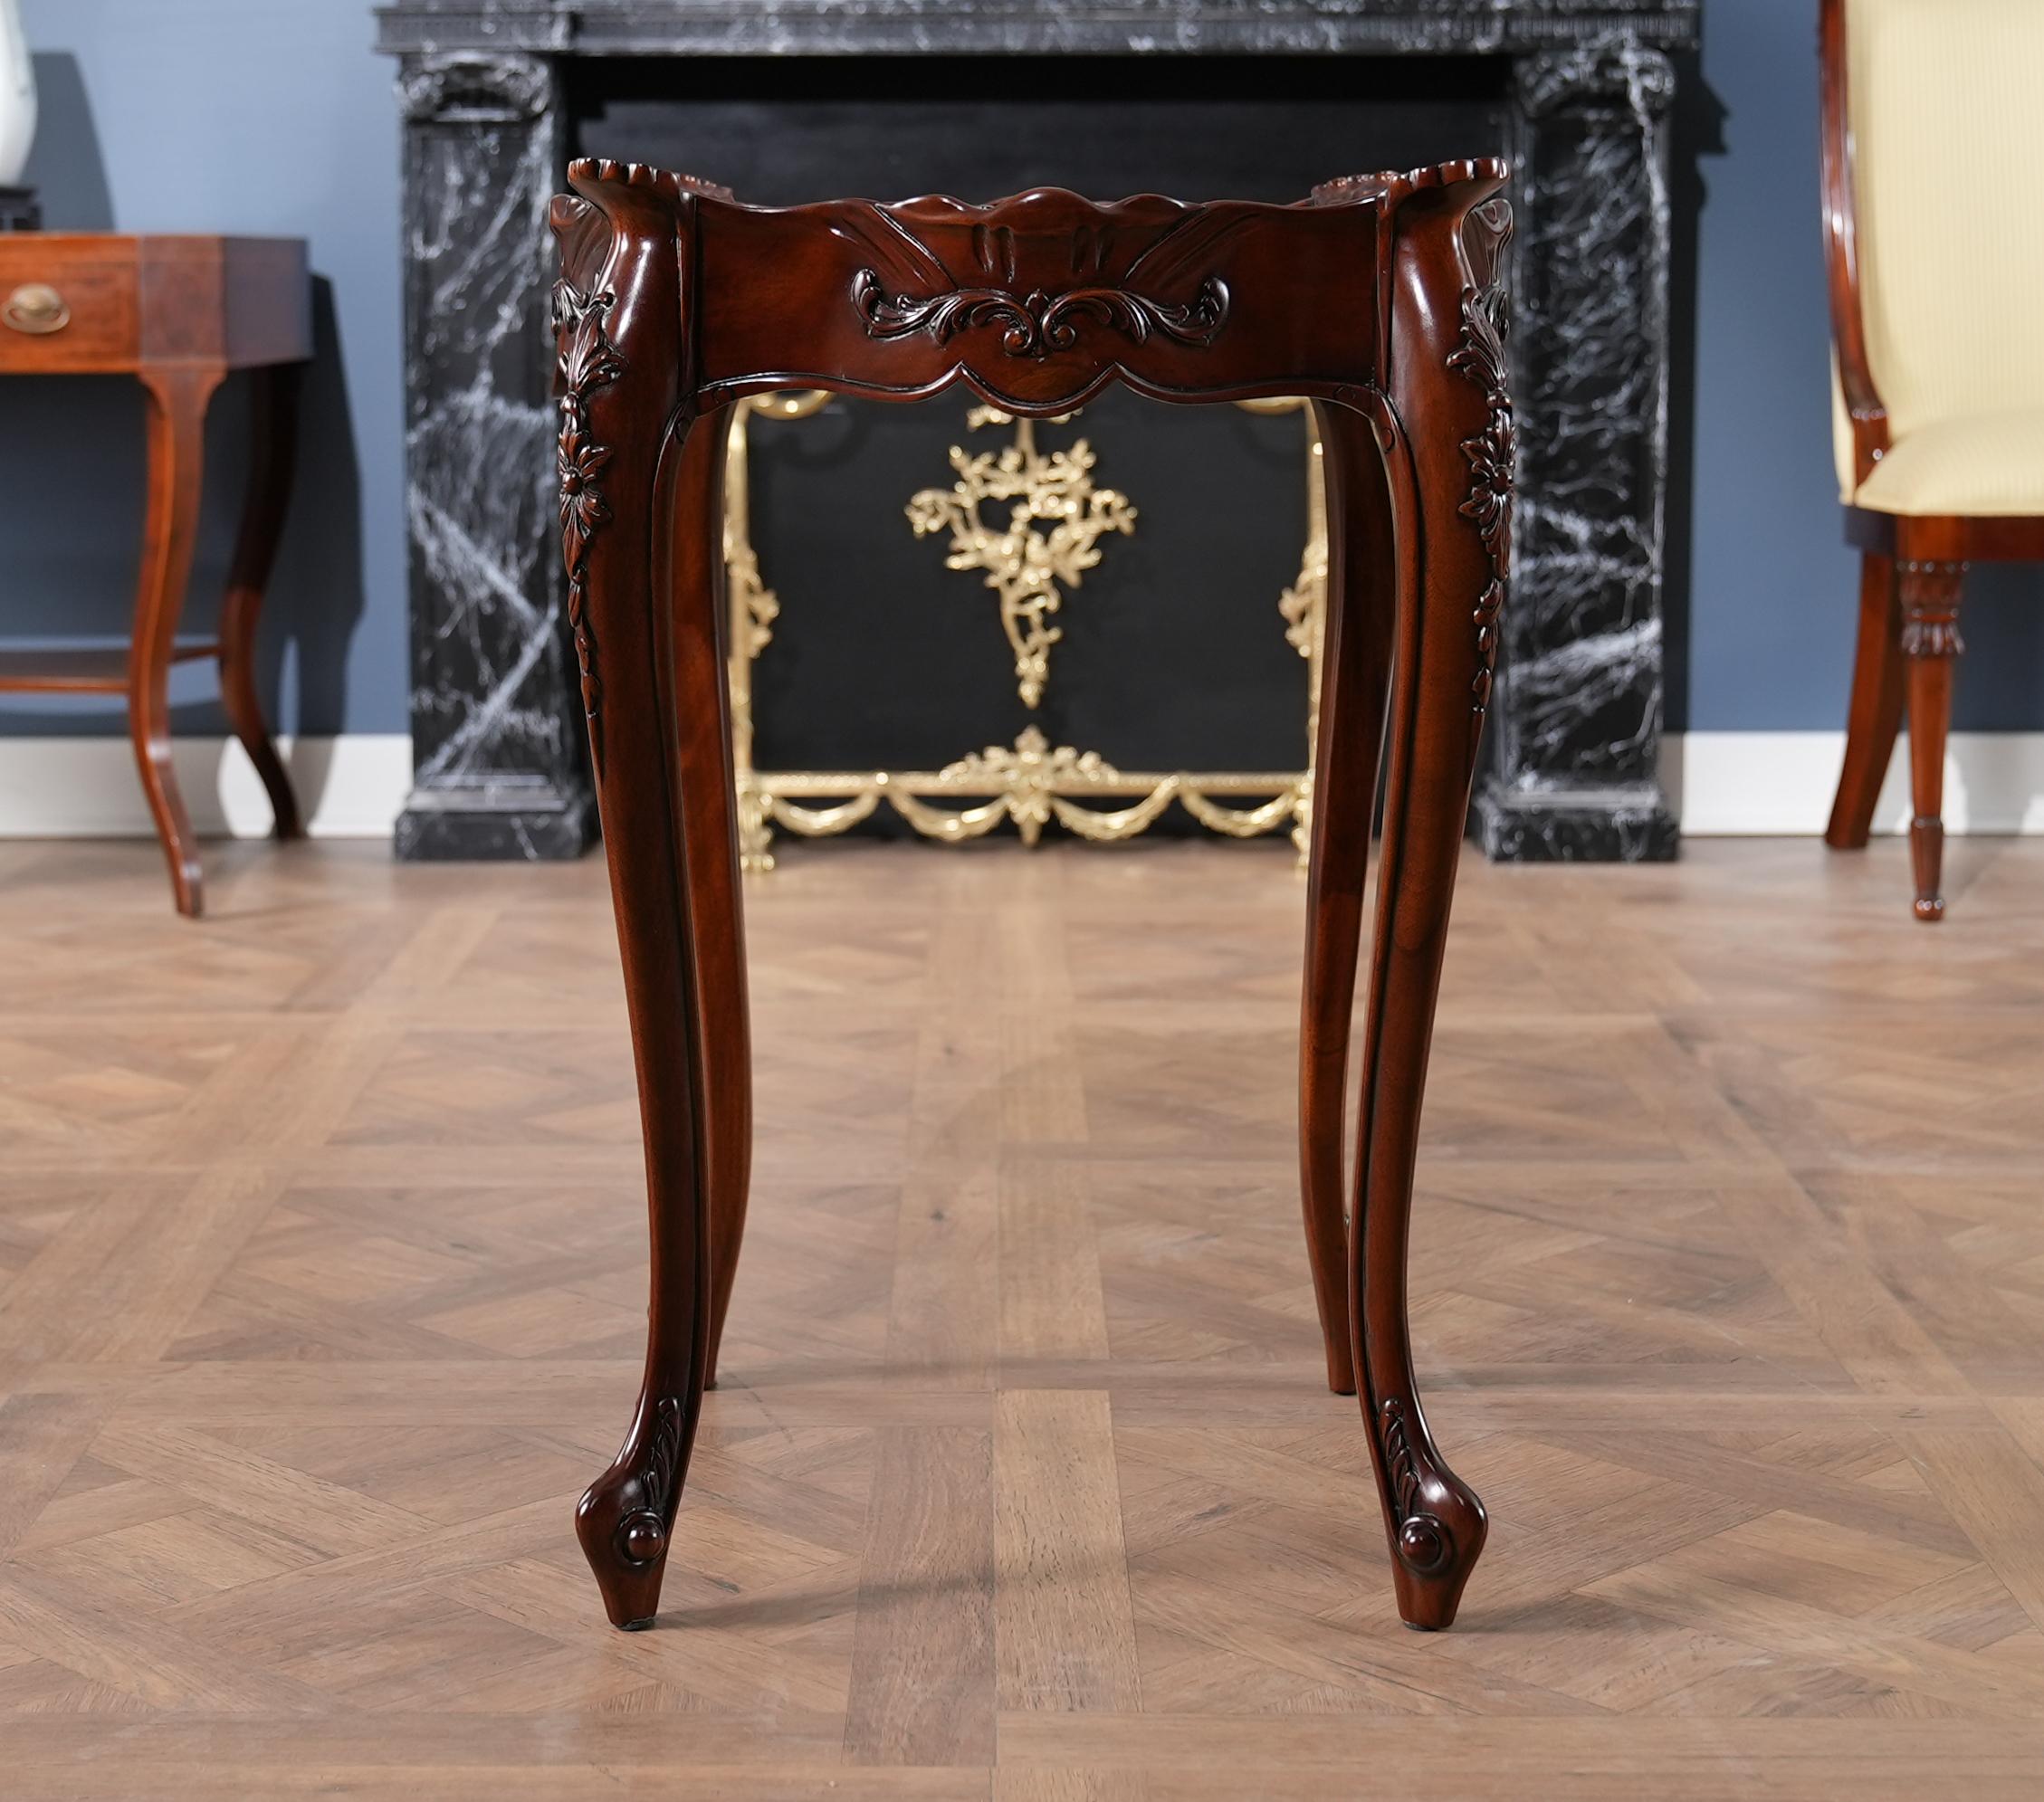 Conçue d'après un classique du 20e siècle, cette table d'appoint française est une reproduction antique de haute qualité qui présente de fantastiques détails sculptés à la main, depuis la moulure le long du dessus de la table jusqu'aux pieds en